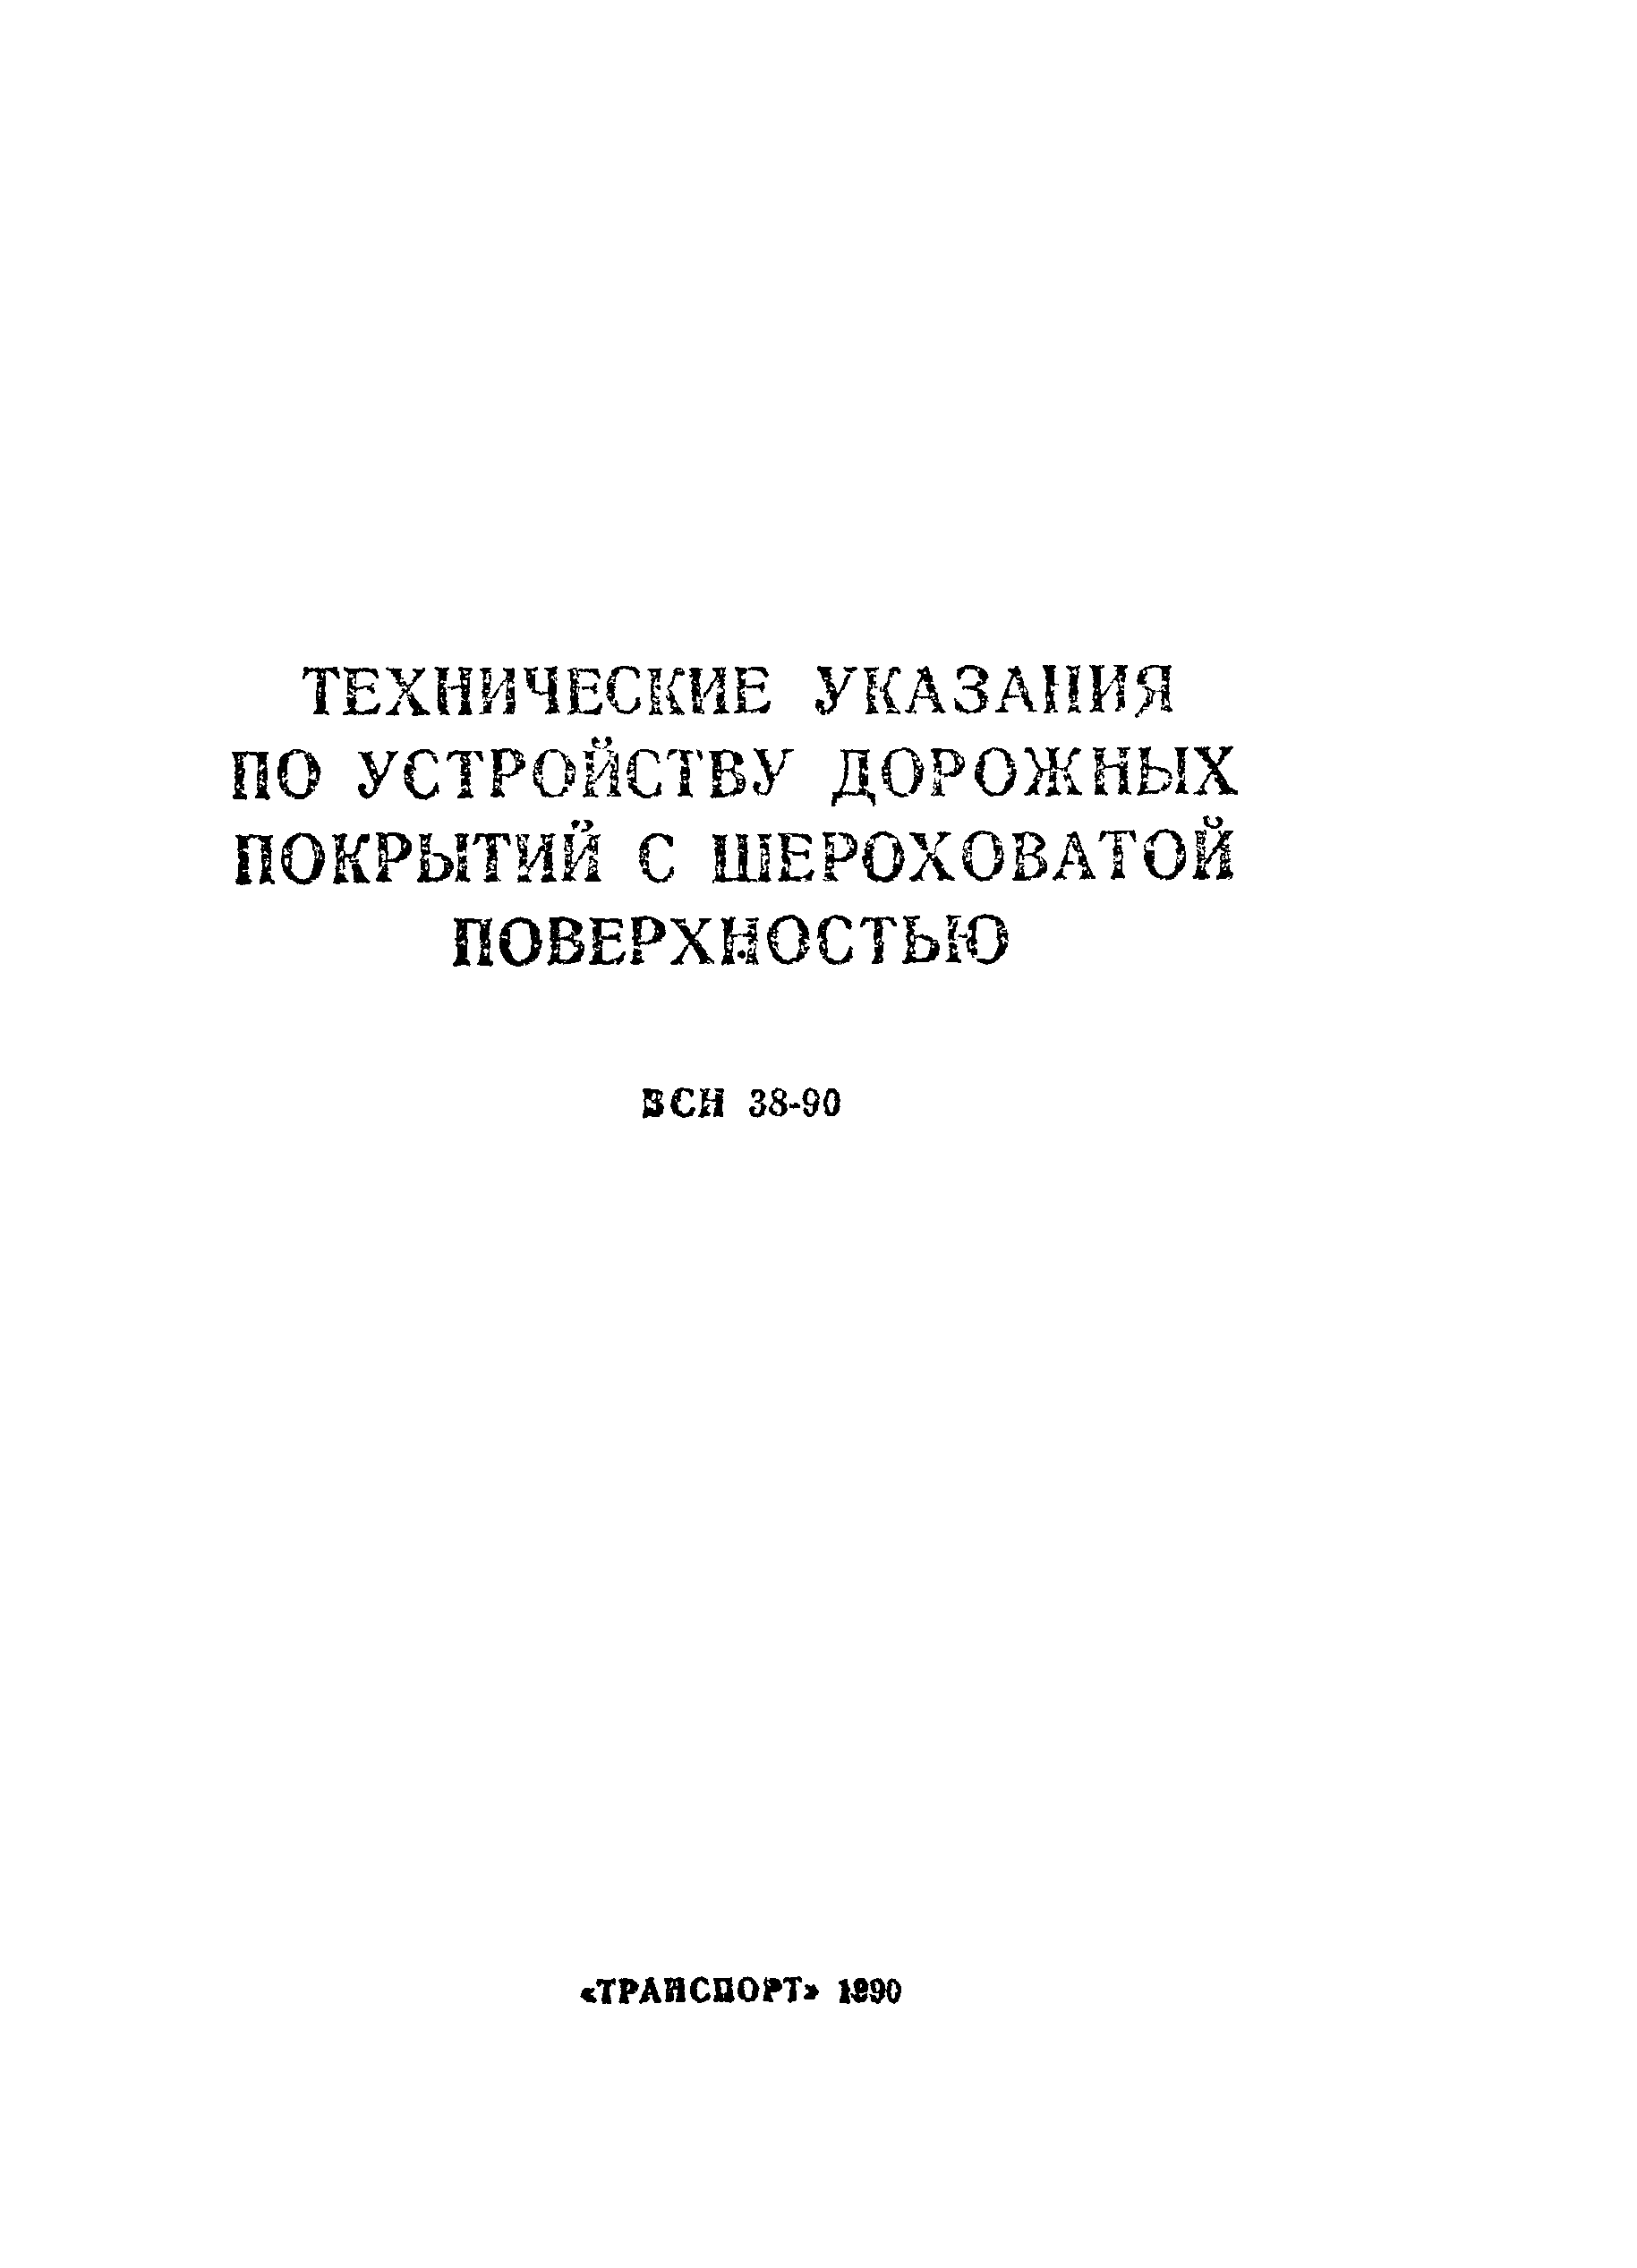 ВСН 38-90